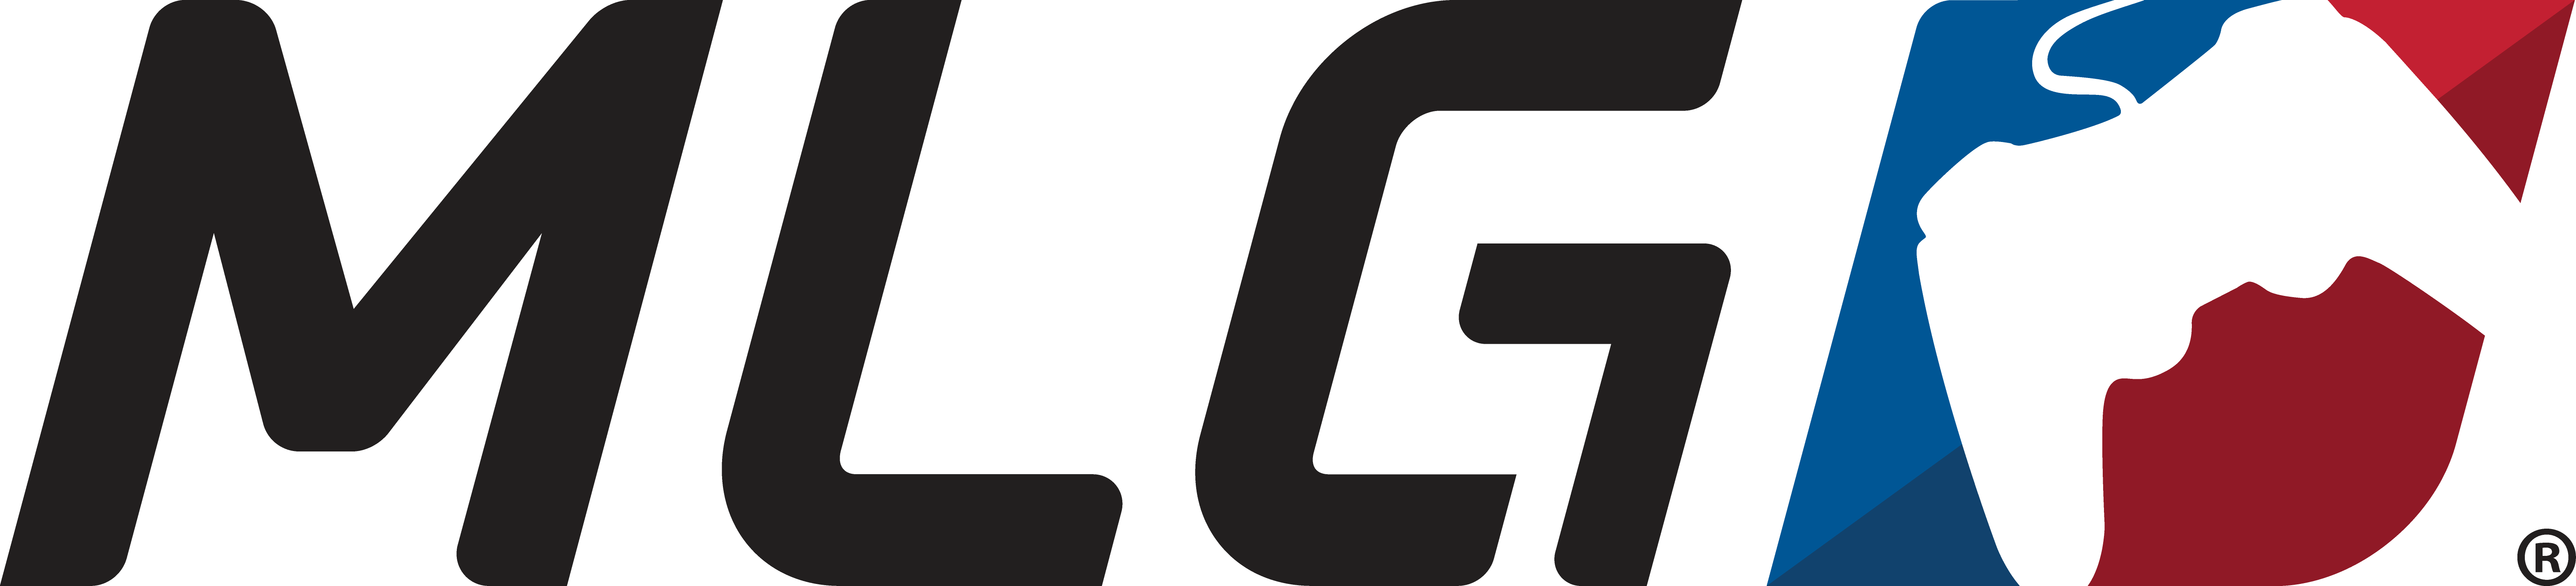 MLG-Logo-Digital.png